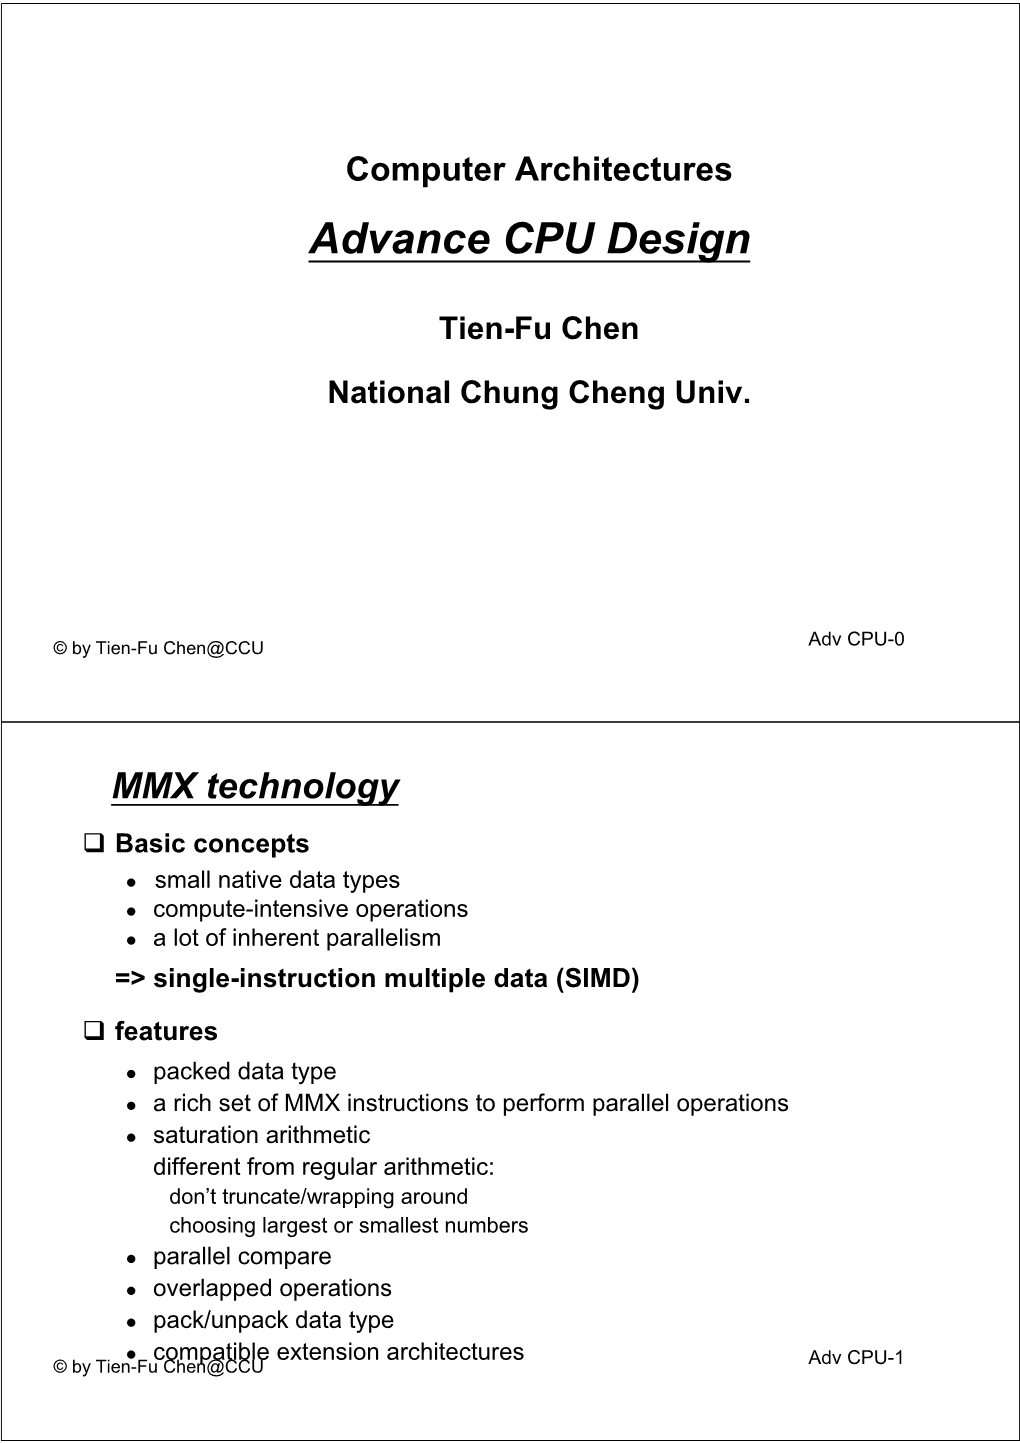 Advance CPU Architecture